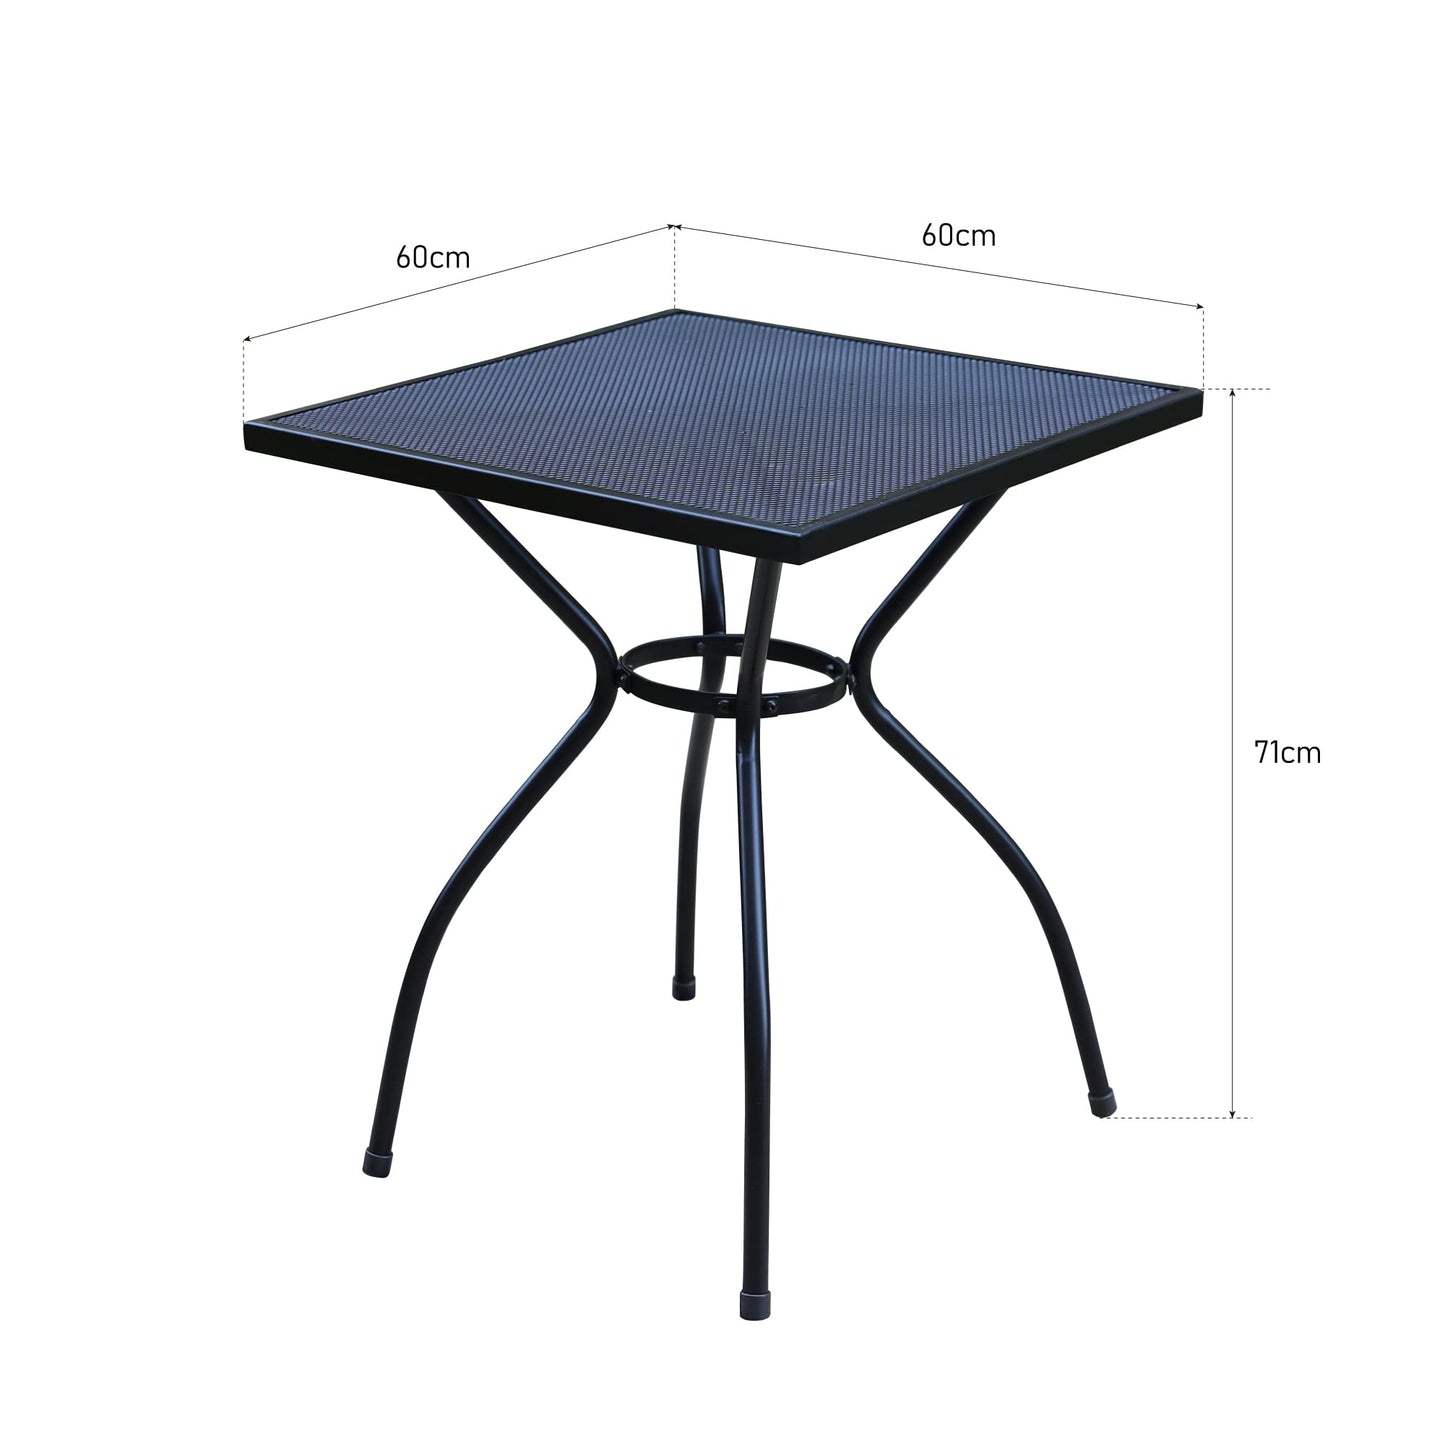 PHI VILLA Garden Coffee Table Metal Square Outdoor Bistro Table